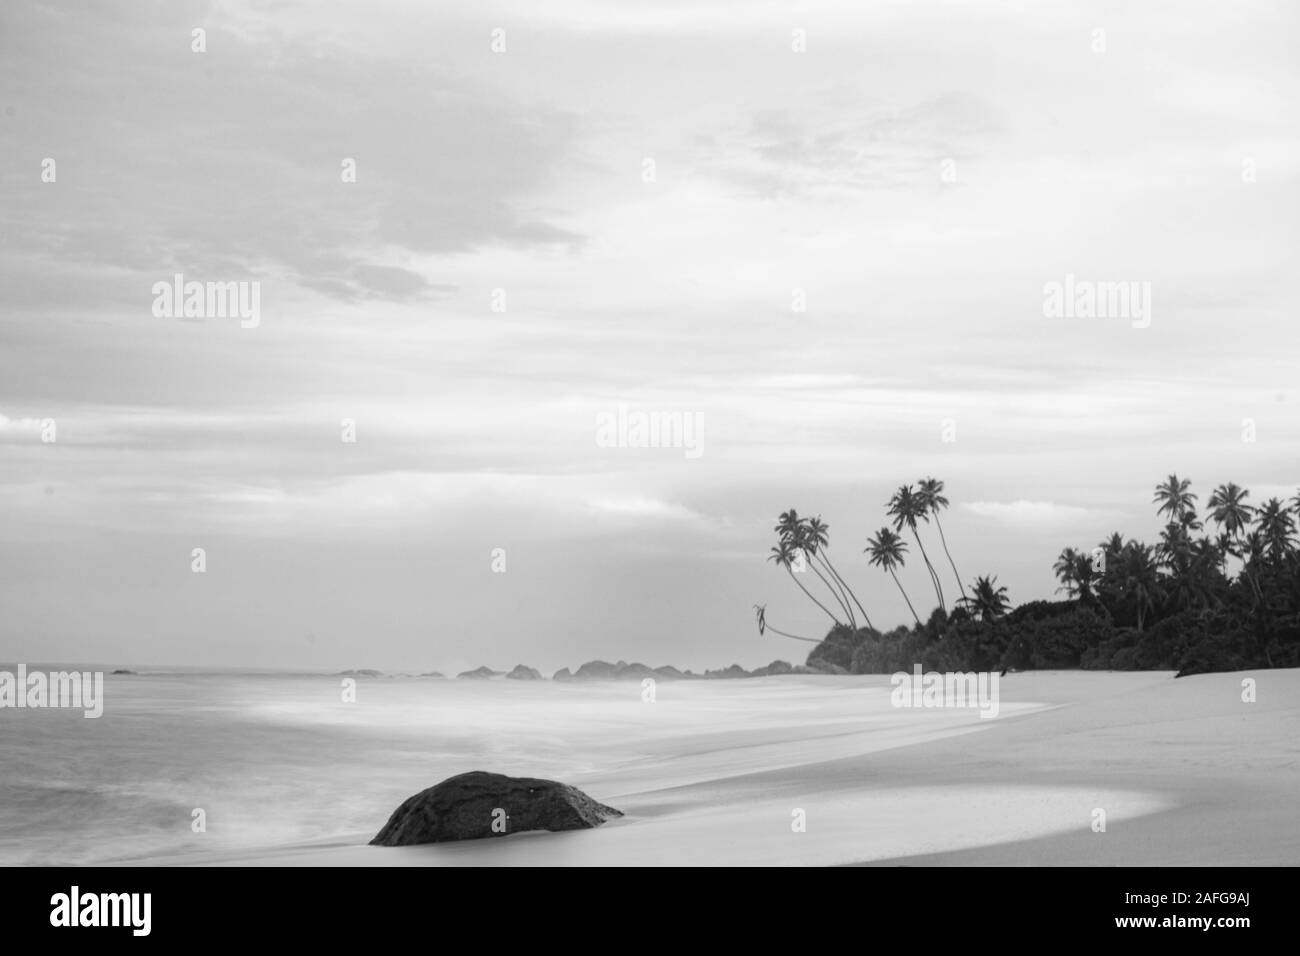 Blanco y Negro Ondas Playa - Sri Lanka - fotografía monocromo - Obturador lento - fotografía de larga exposición fotografía Foto de stock